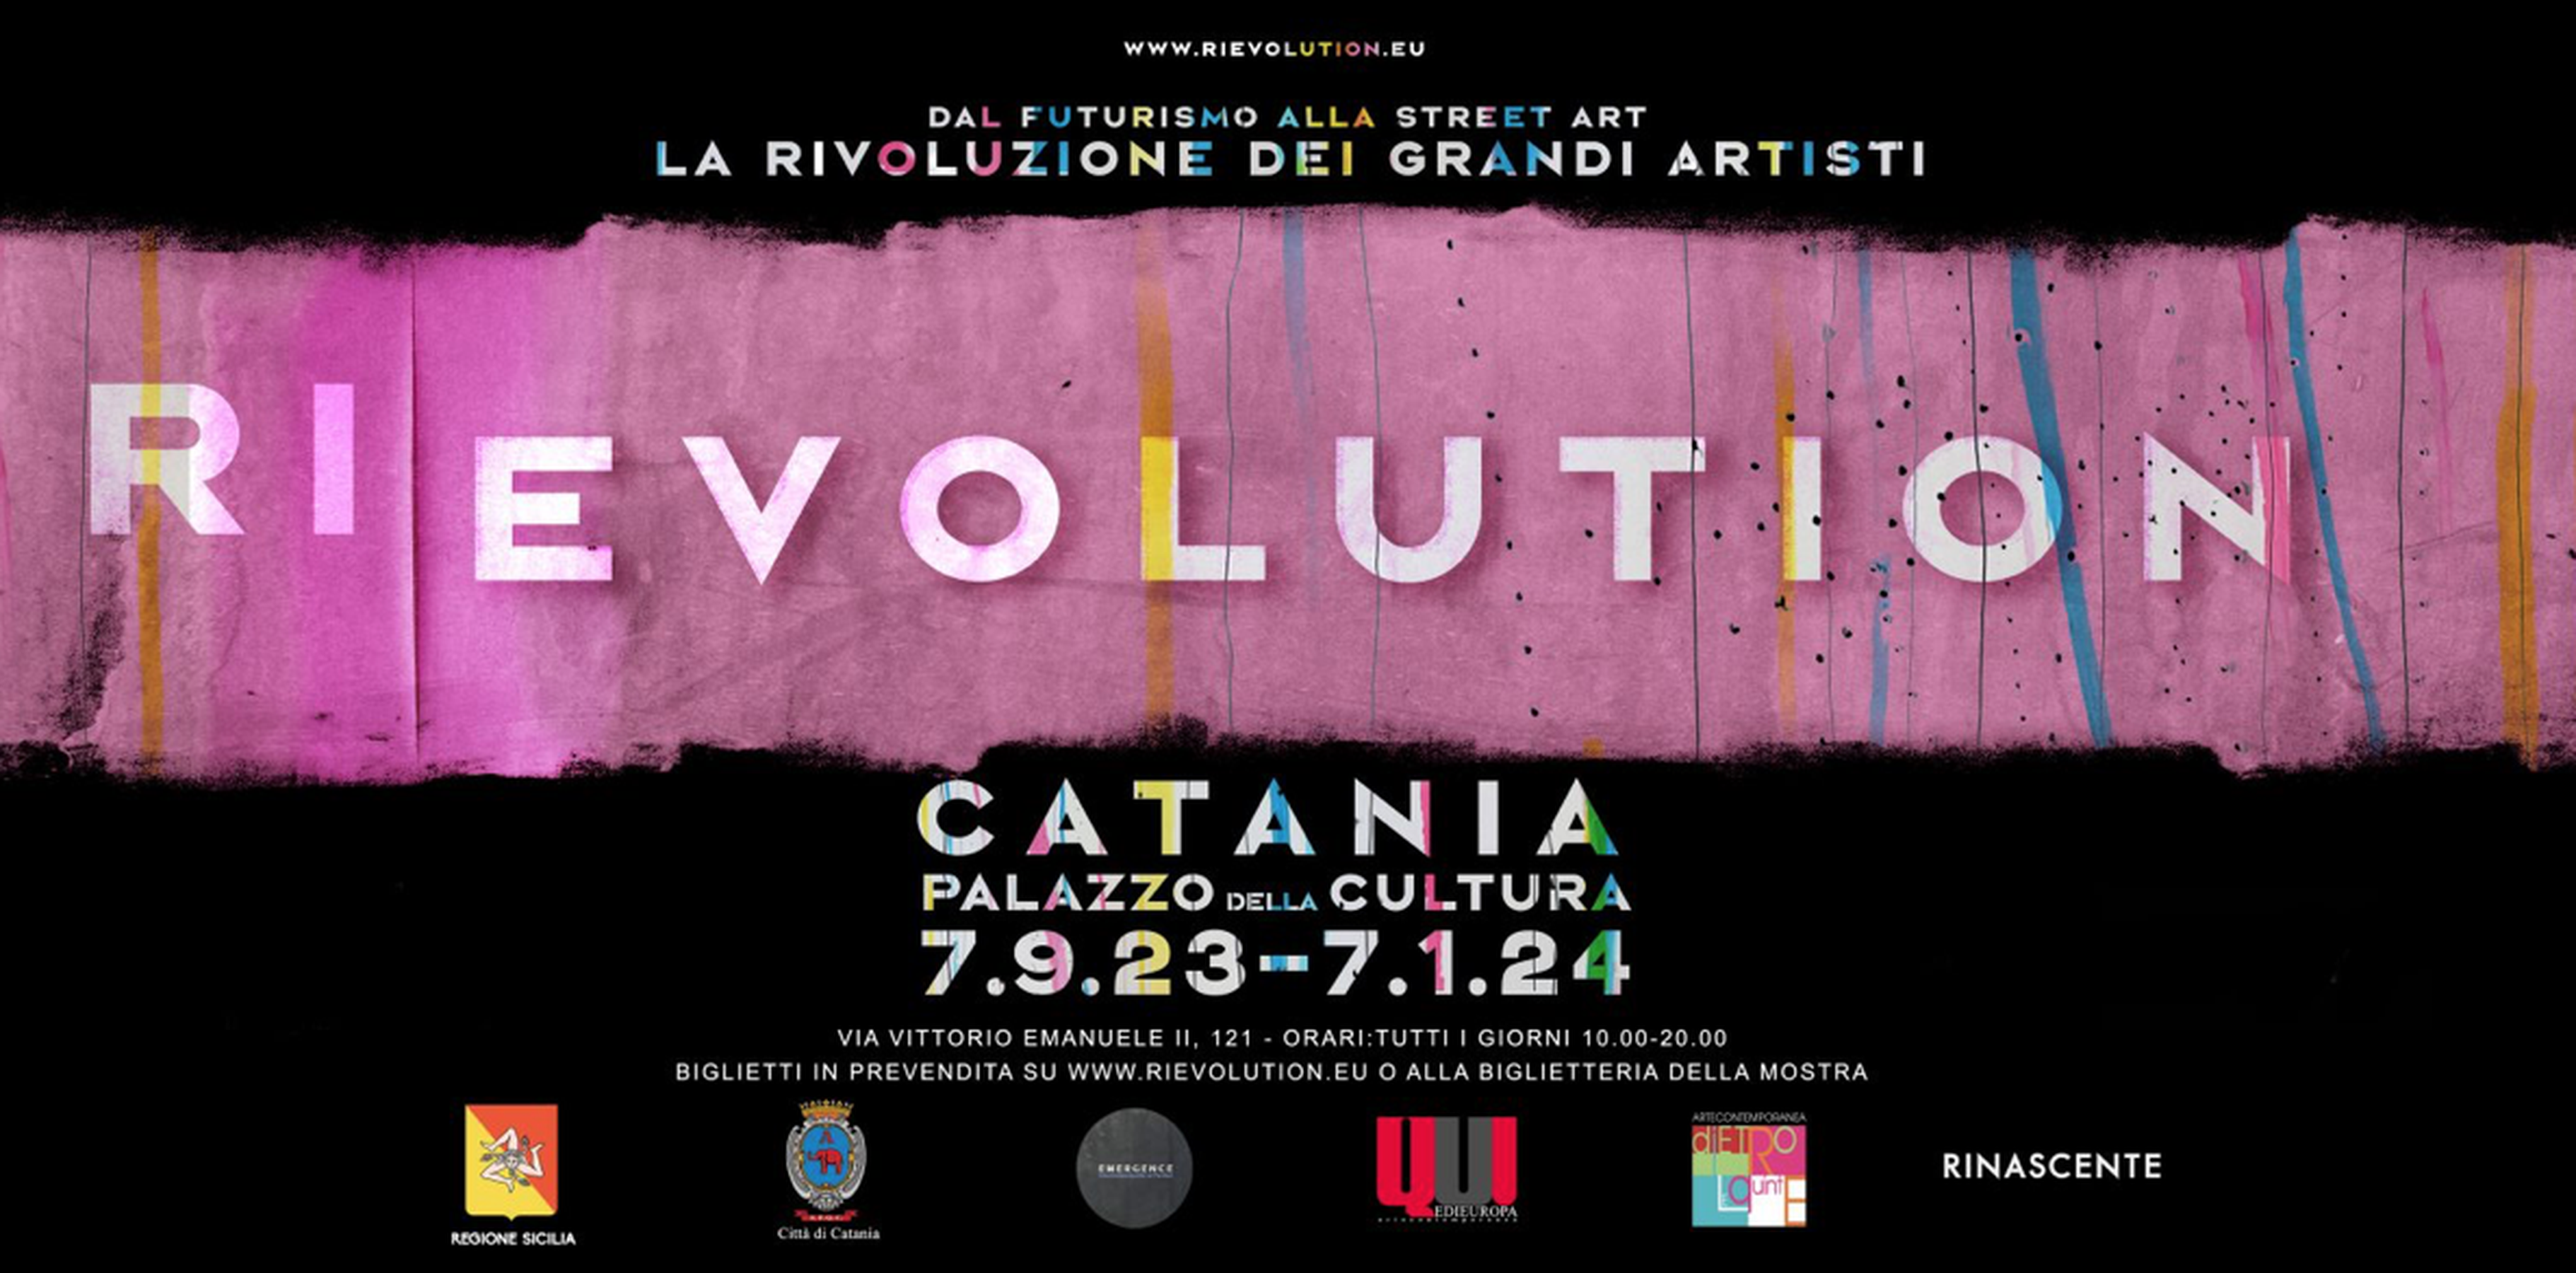 RI-EVOLUTION- I grandi rivoluzionari dell’Arte italiana,dal Futurismo alla Street Art,